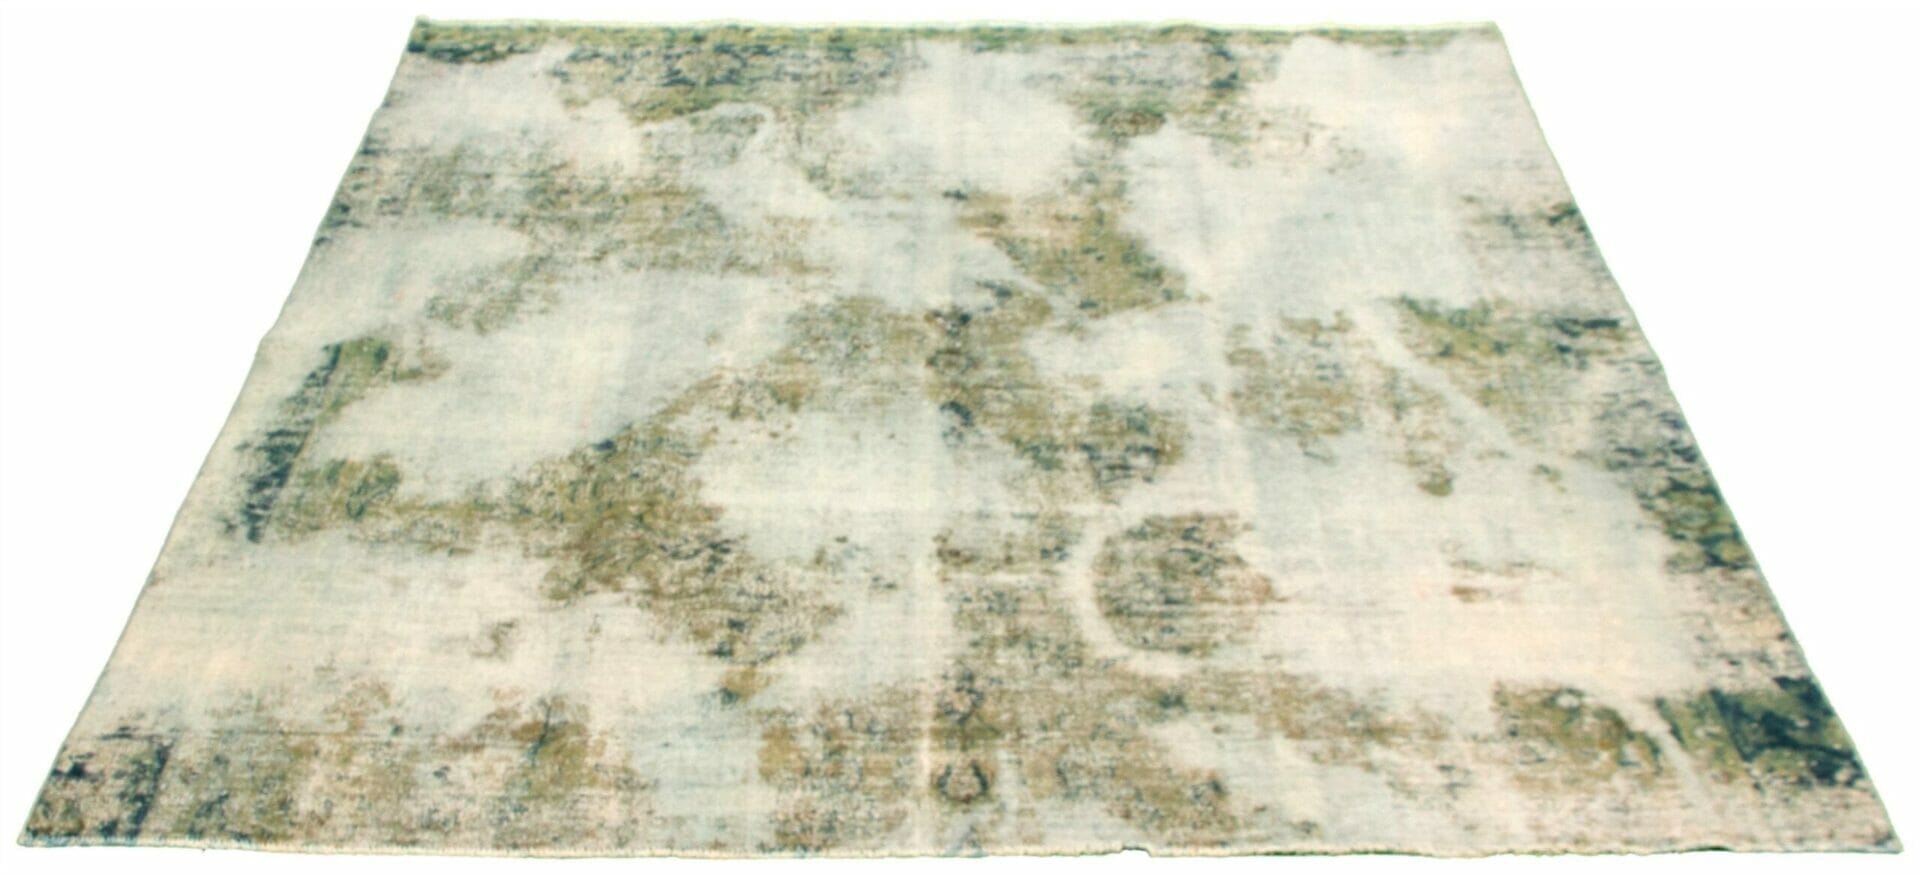 Een vloerkleed met een groen en wit patroon erop.